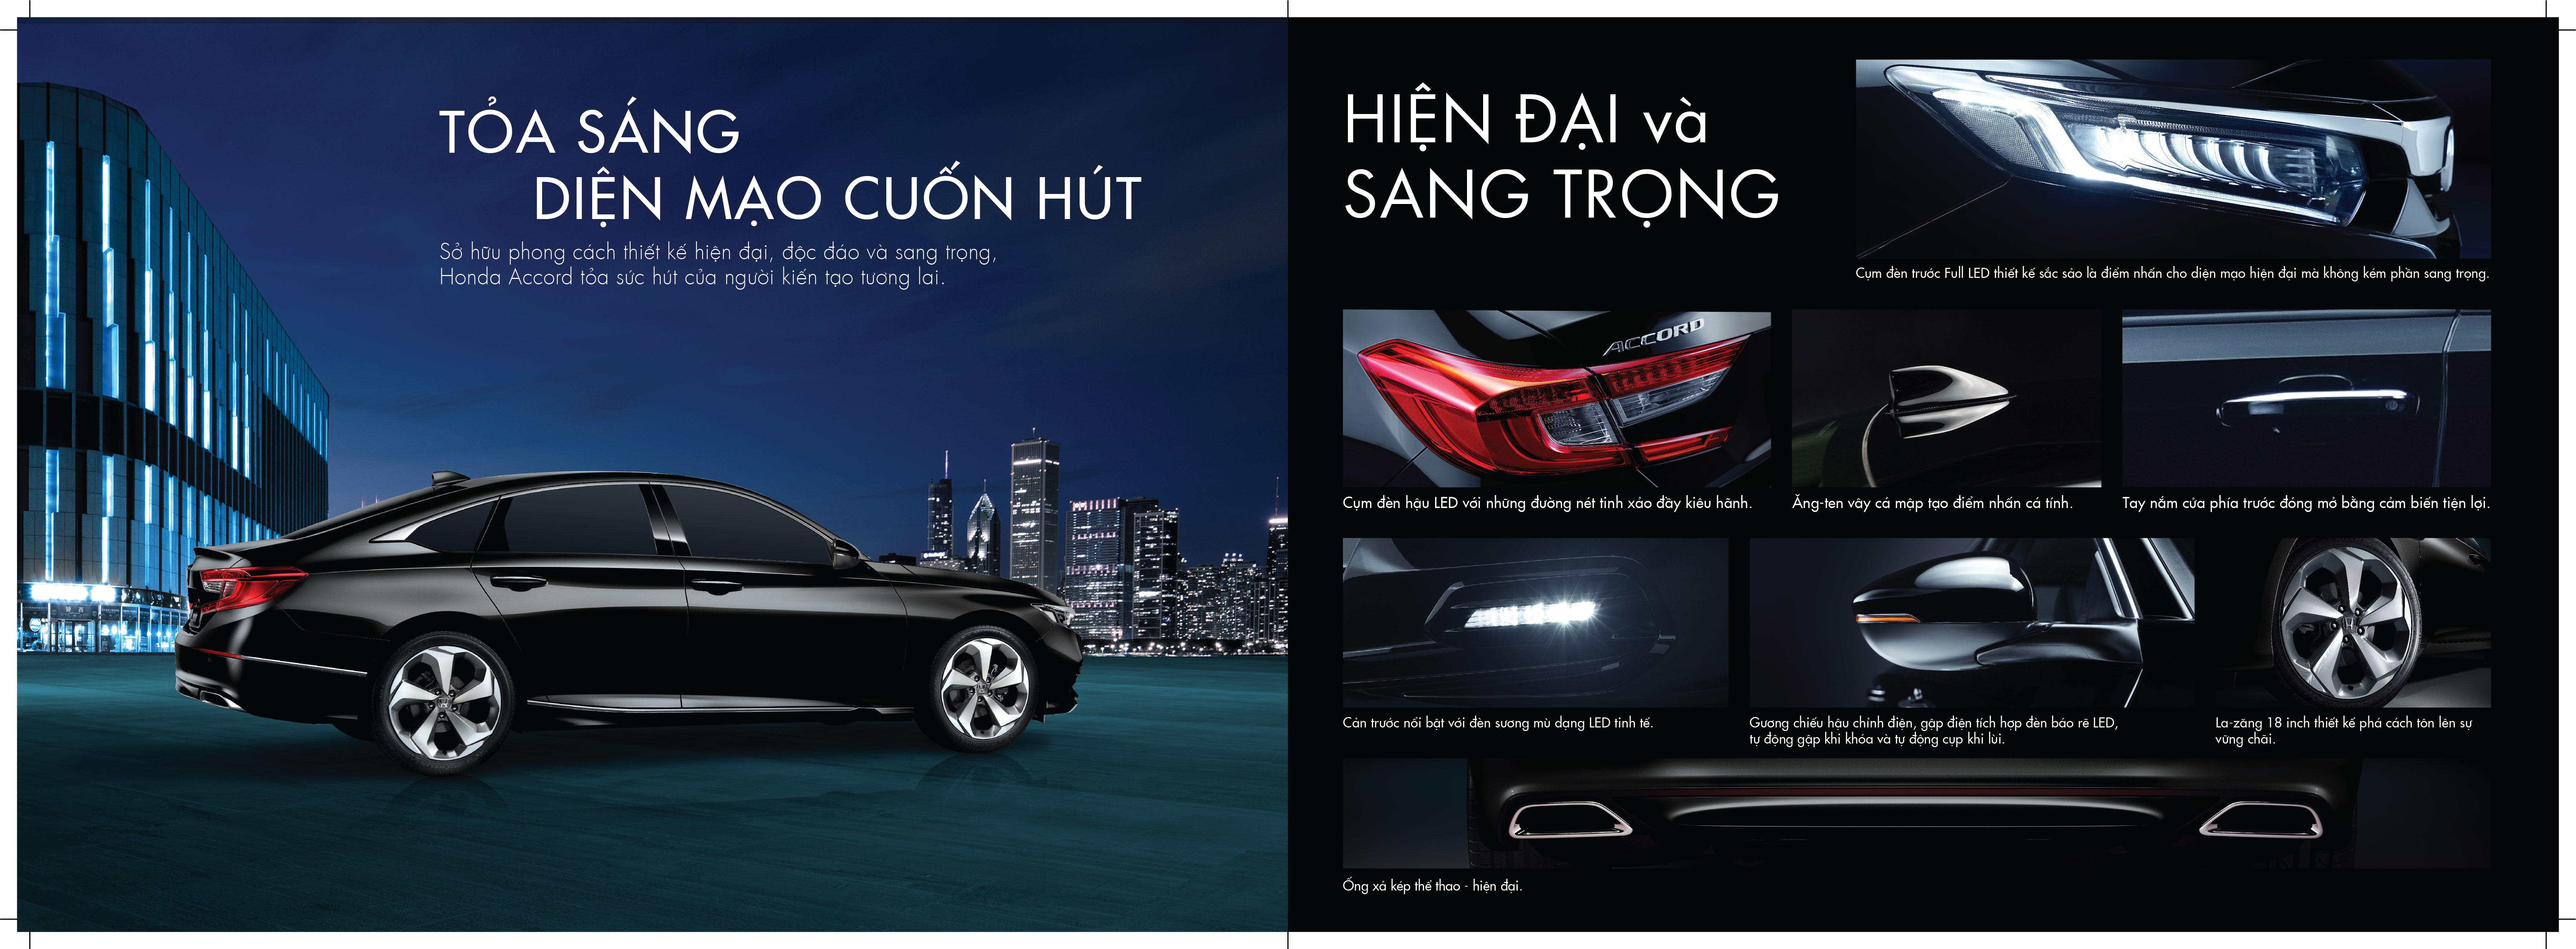 Honda Accord 2022 Sensing - Honda Khánh Hòa - Honda Ô tô Nha Trang - 0905 069 259